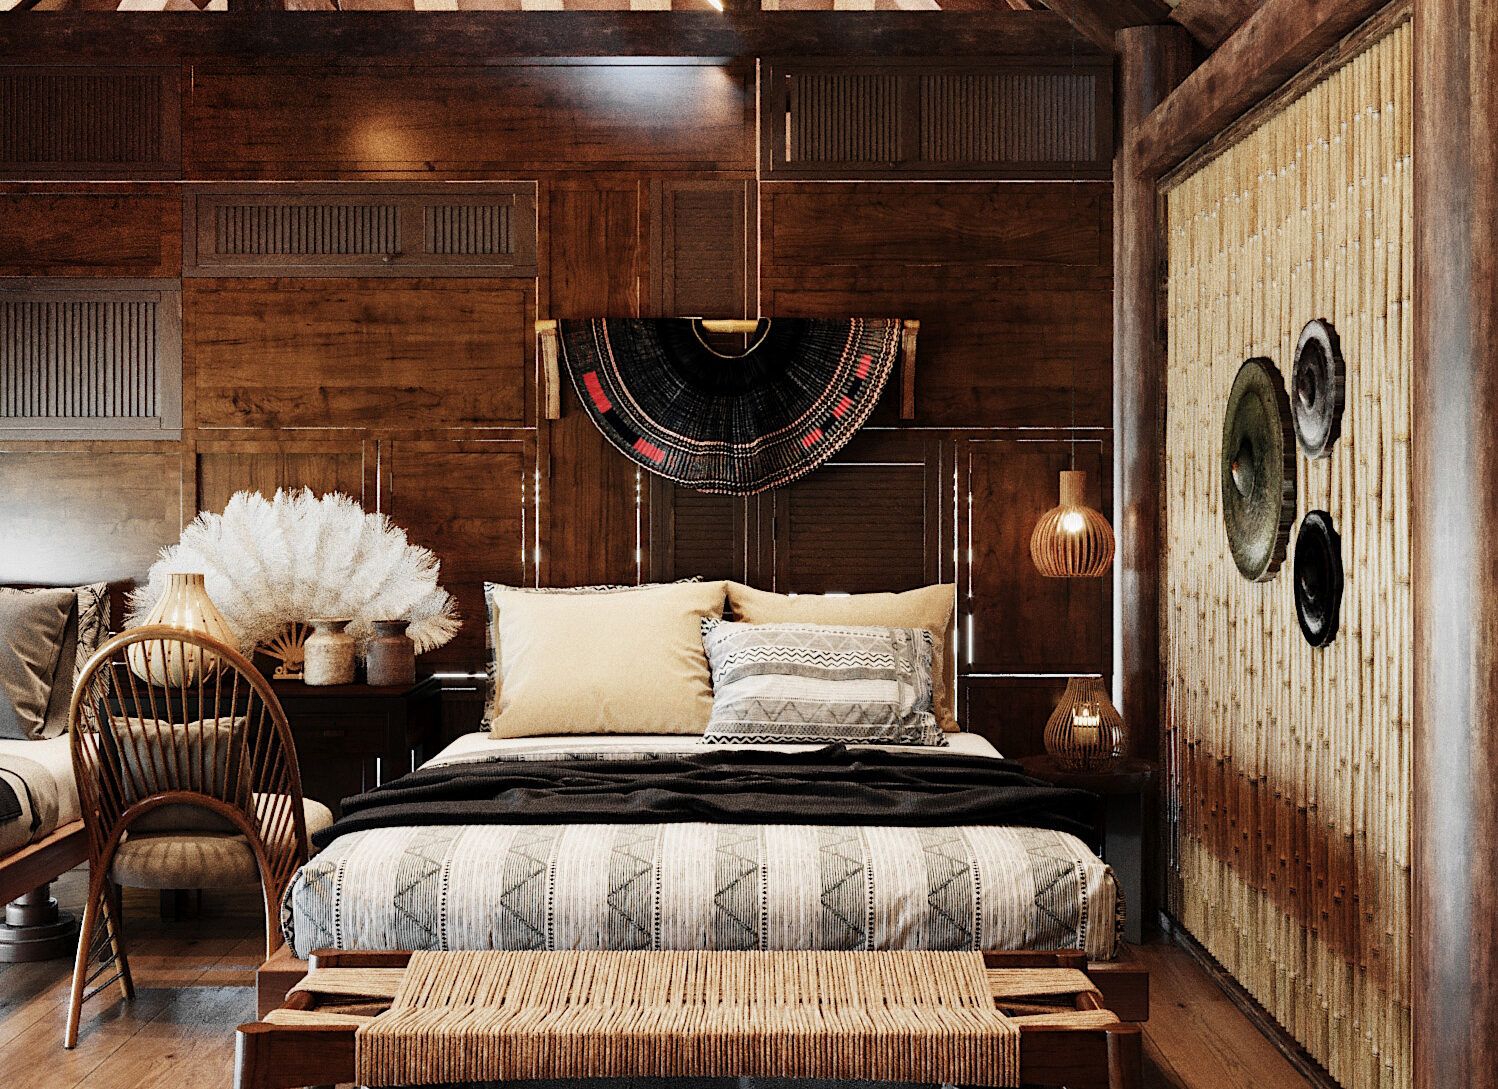 Các tấm gỗ tự nhiên cho giường, tủ, và đầu giường tạo nên vẻ đẹp mộc mạc và chất liệu tự nhiên độc đáo